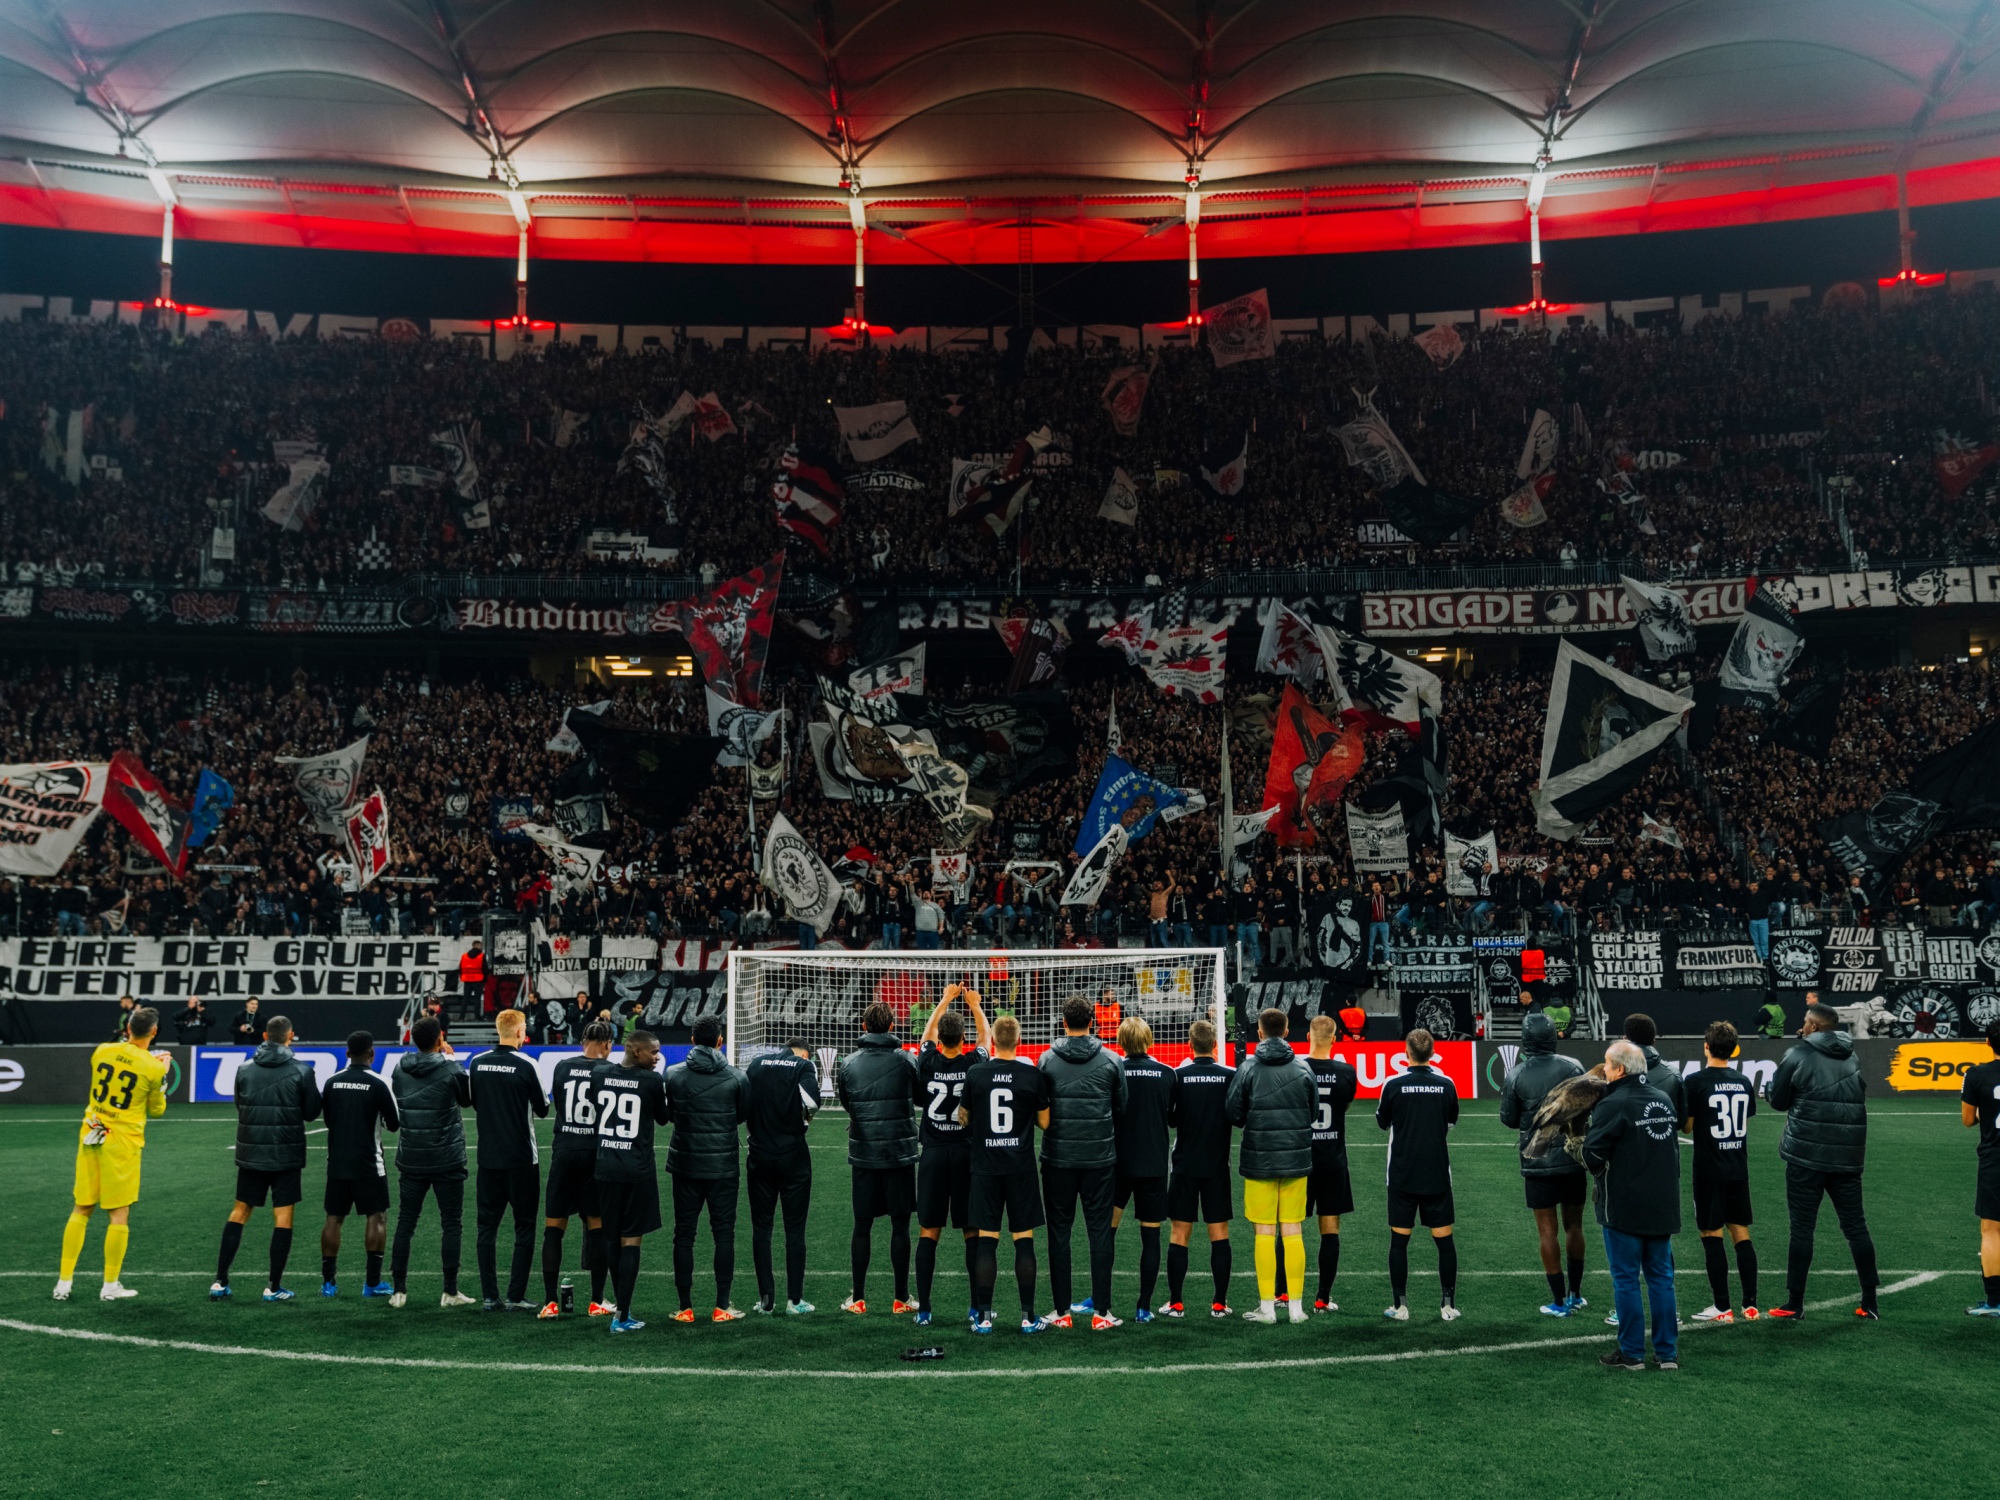 Image credit: Eintracht Frankfurt